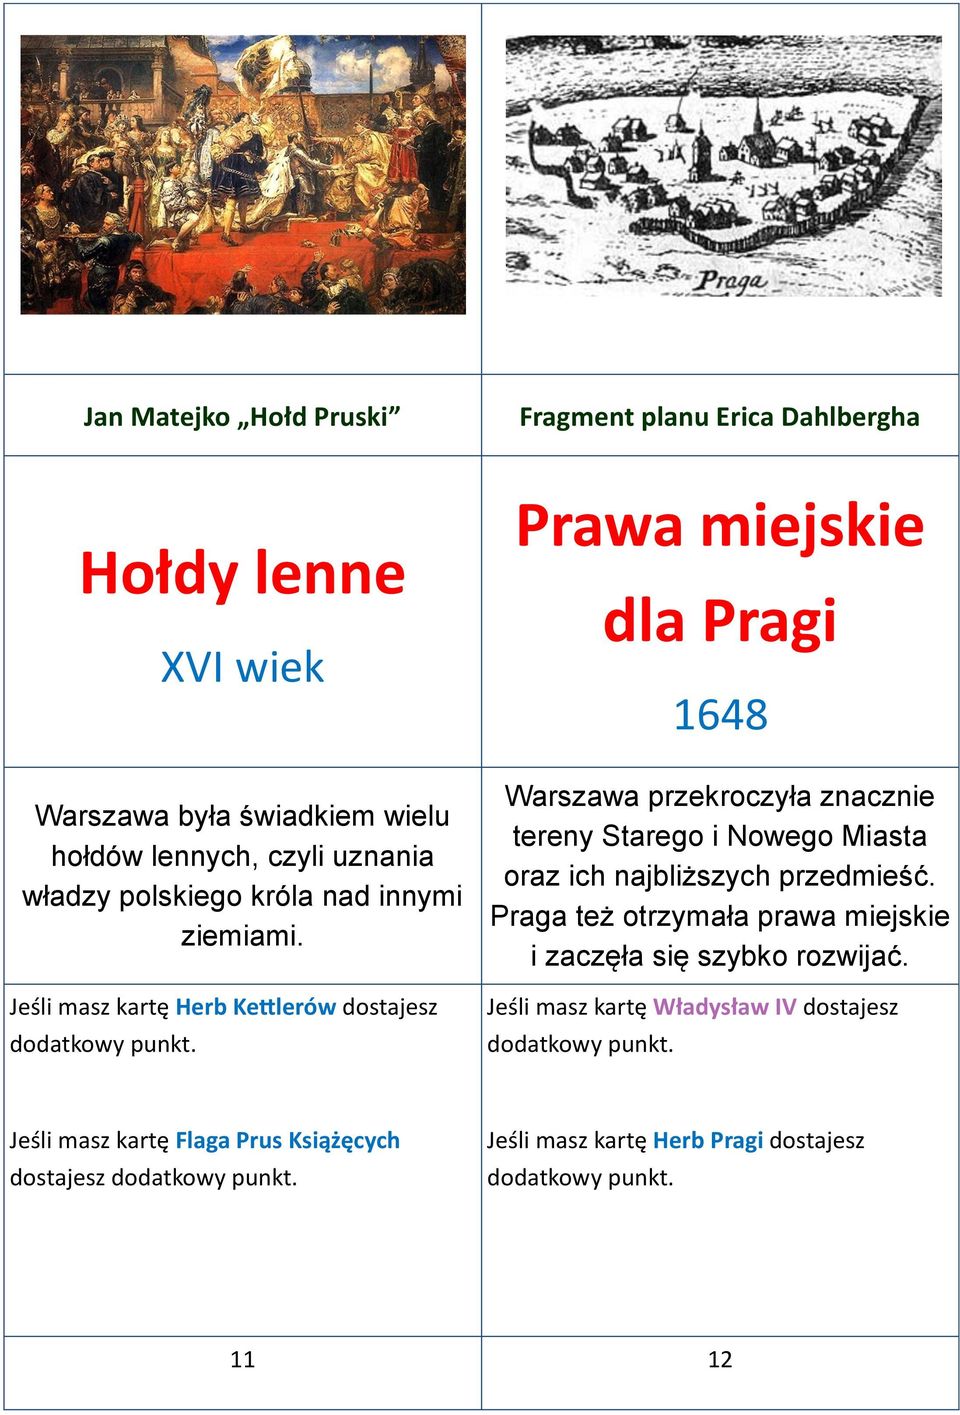 Jeśli masz kartę Herb Kettlerów dostajesz Prawa miejskie dla Pragi 1648 Warszawa przekroczyła znacznie tereny Starego i Nowego Miasta